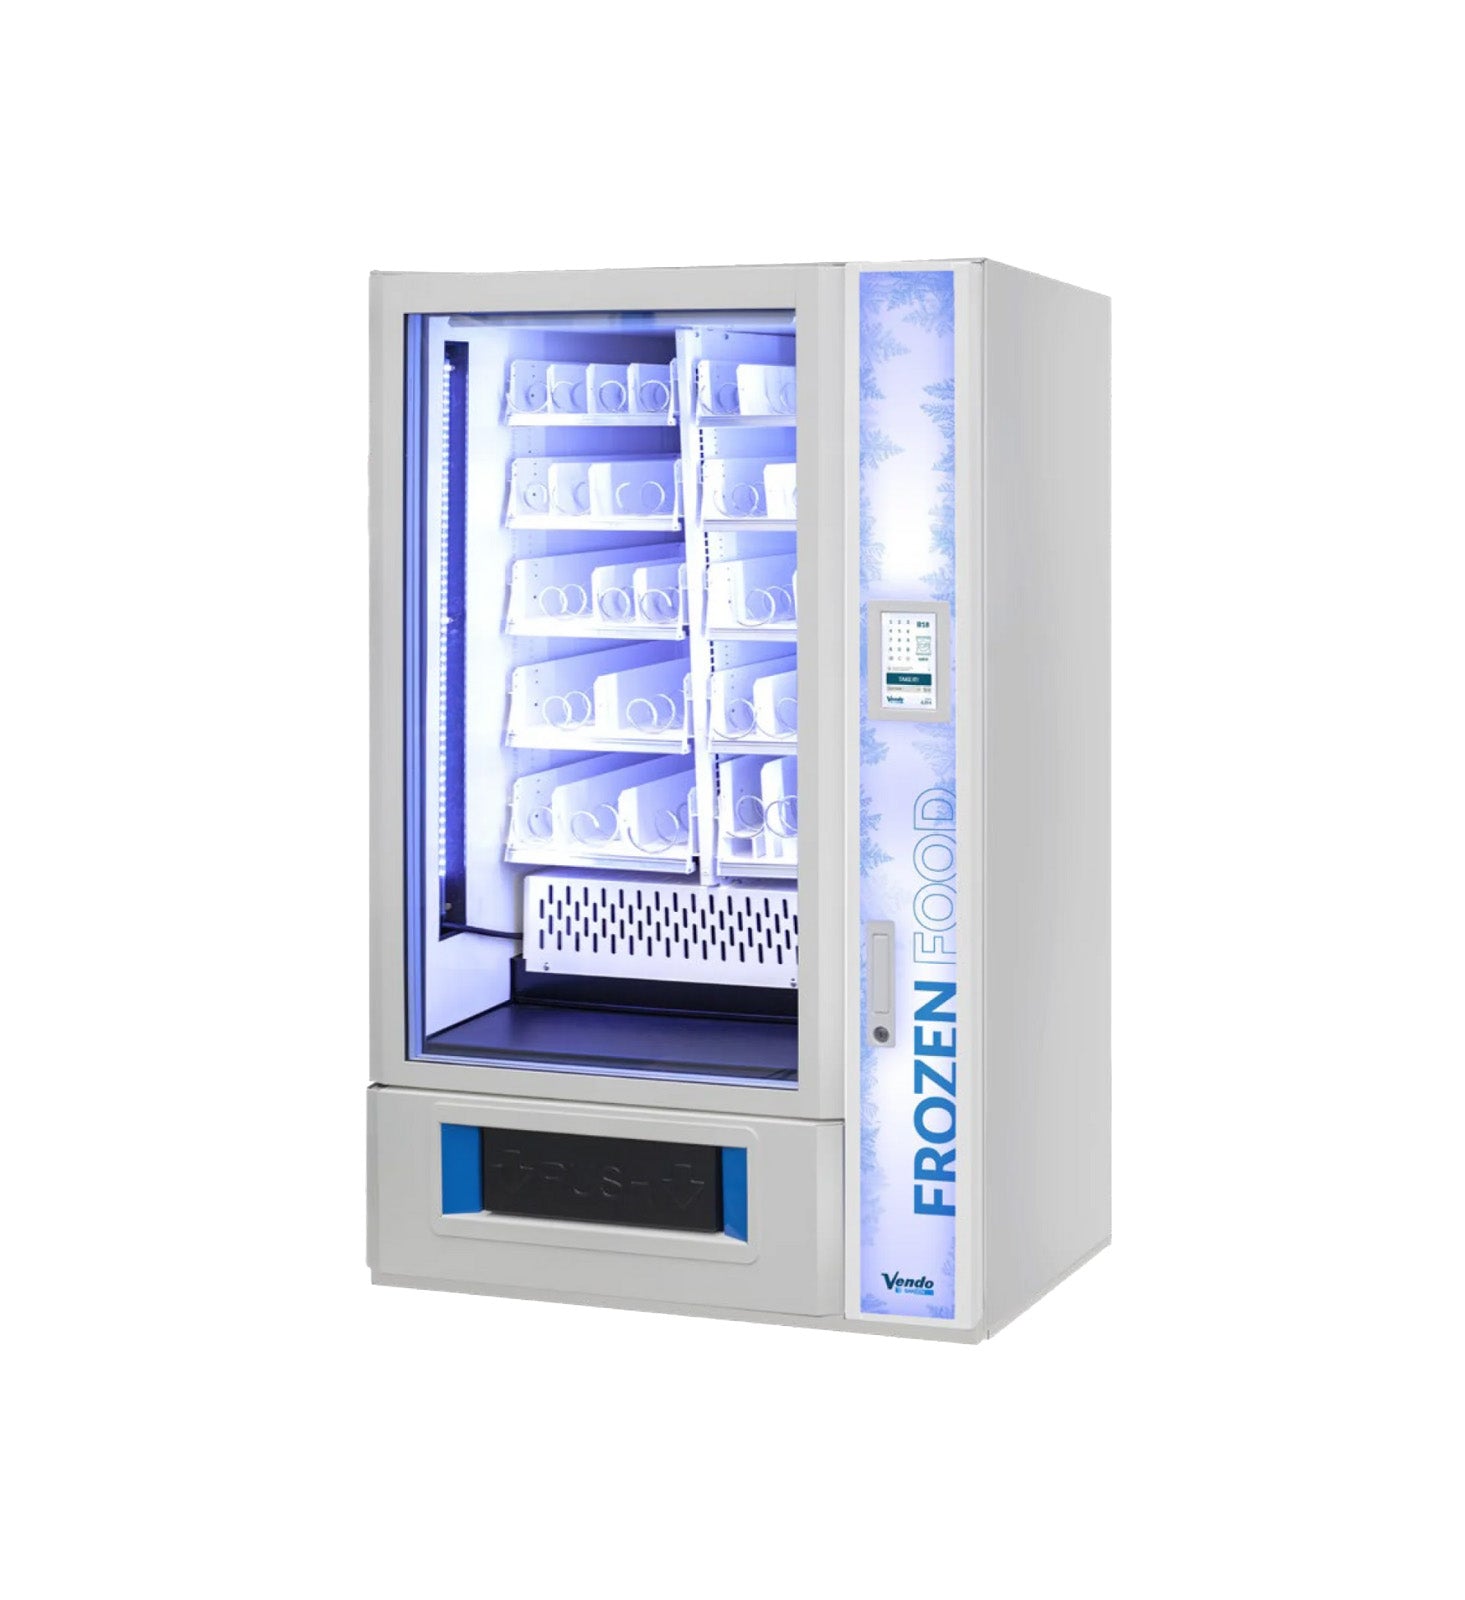 Eisautomat G-Frozen Warenautomat Snackautomat Verkaufsautomat